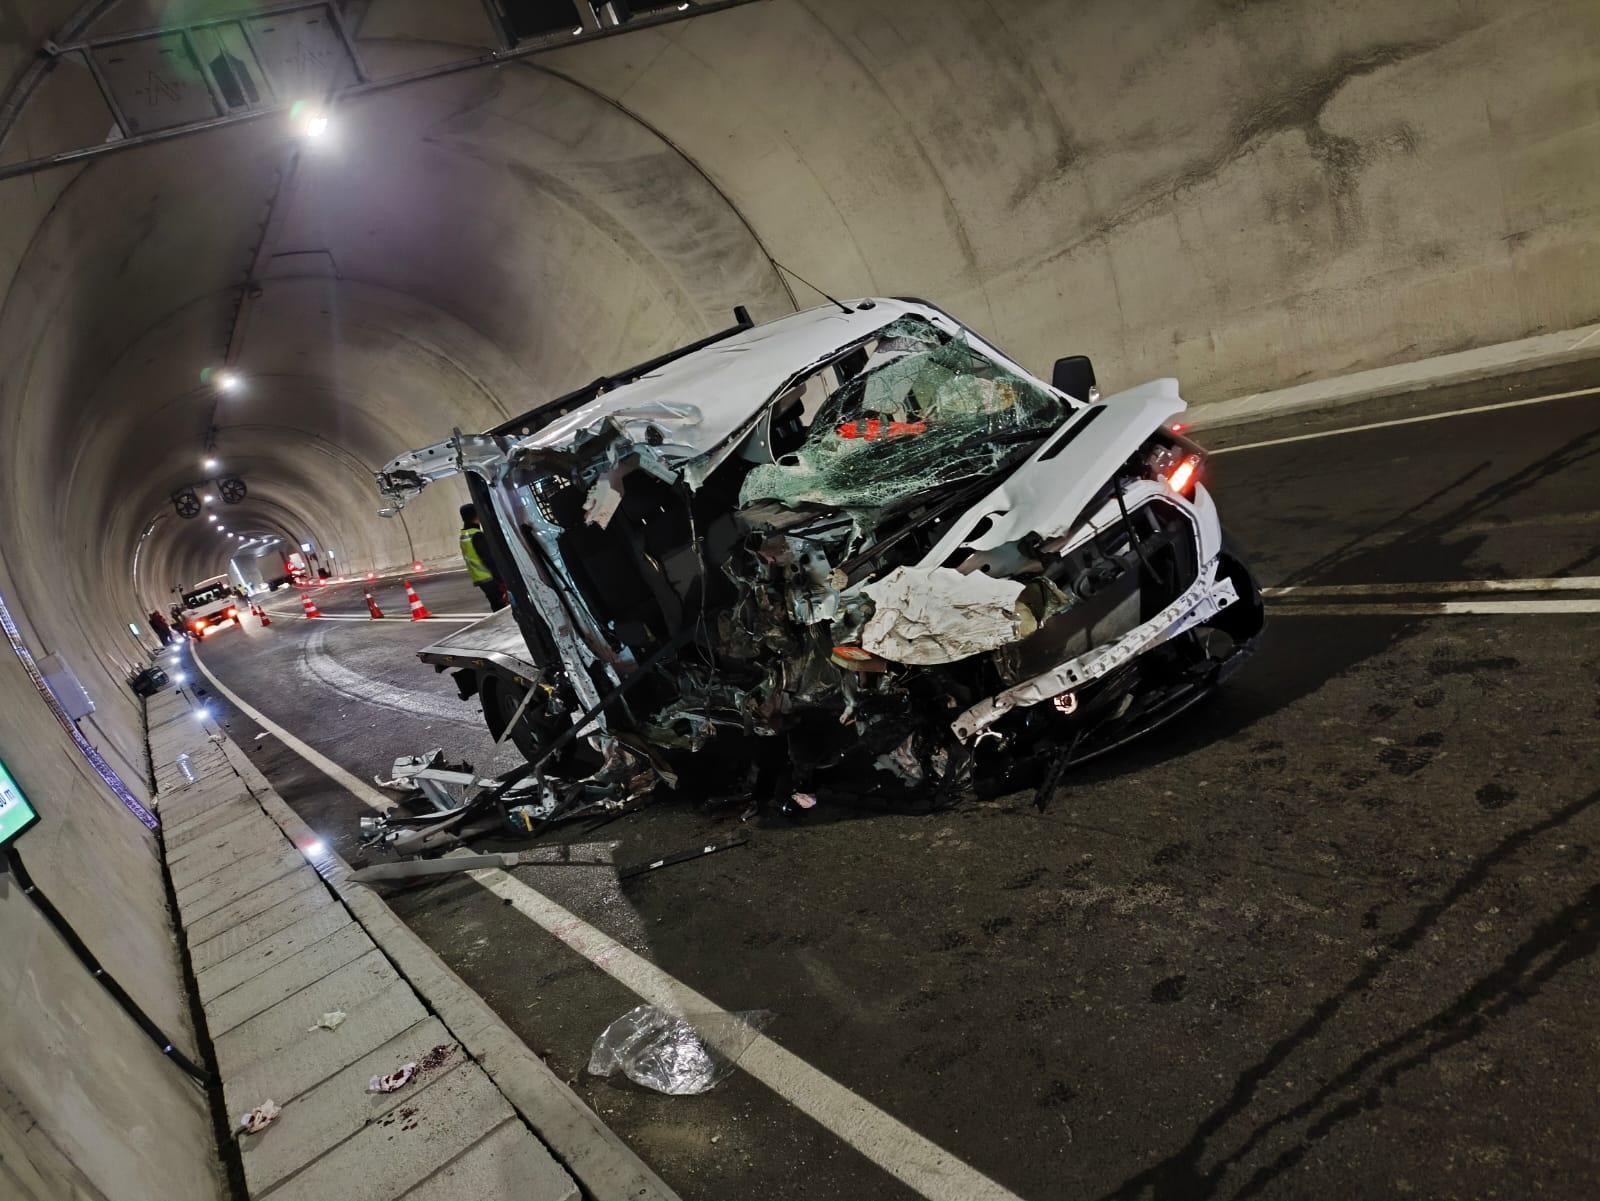 Tünelde korkunç kaza: 1 ölü, 3 yaralı